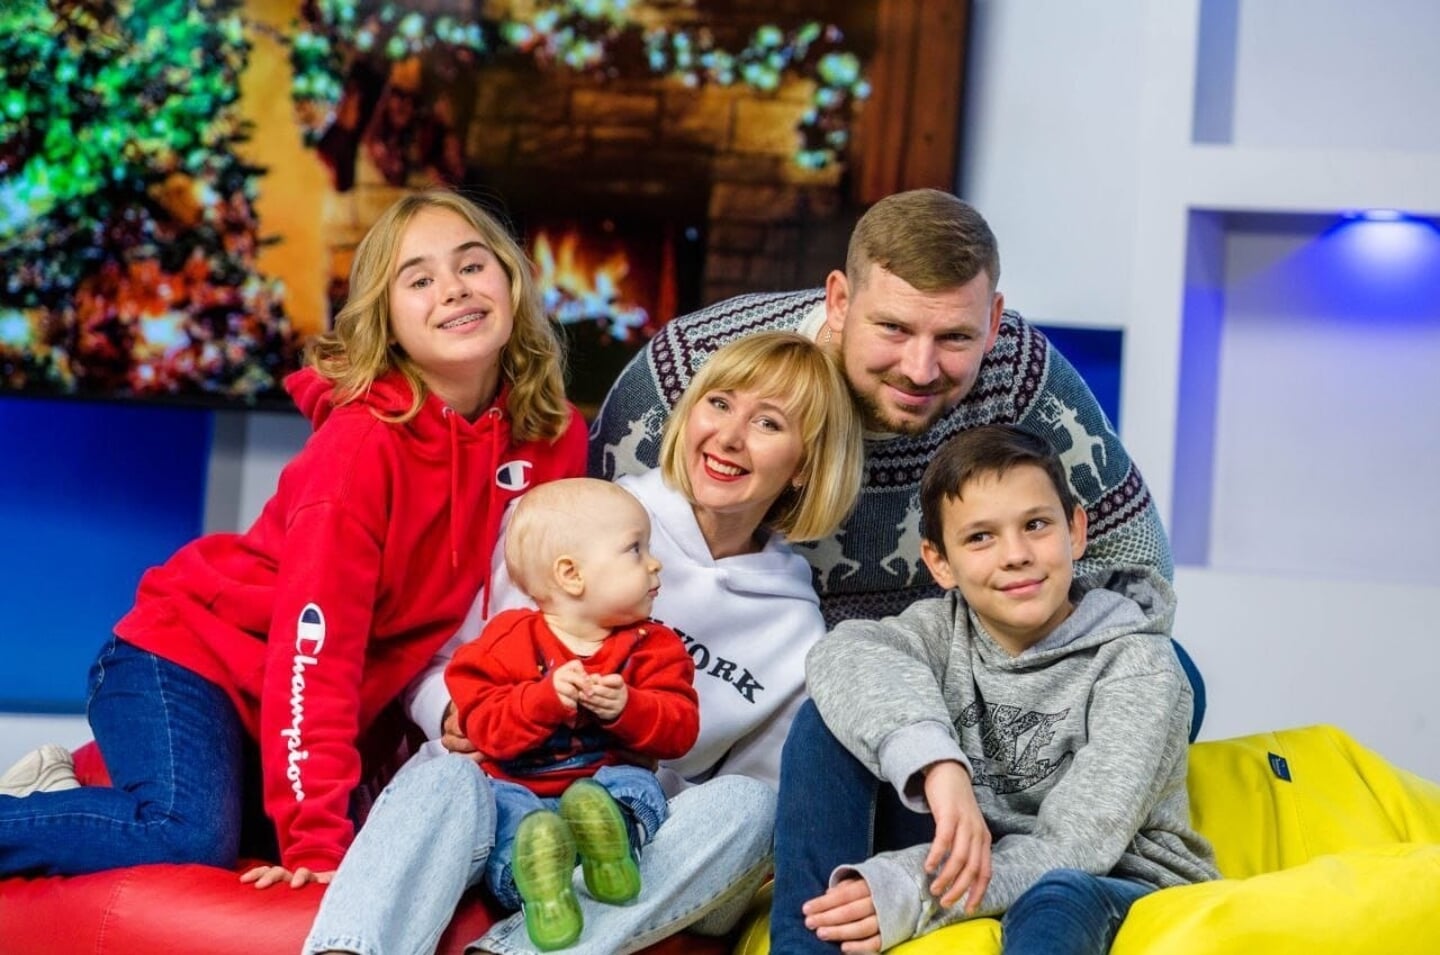 Eugenia en haar gezin. Konstatin vecht voor de vrijheid van zijn gezin in Oekraine.